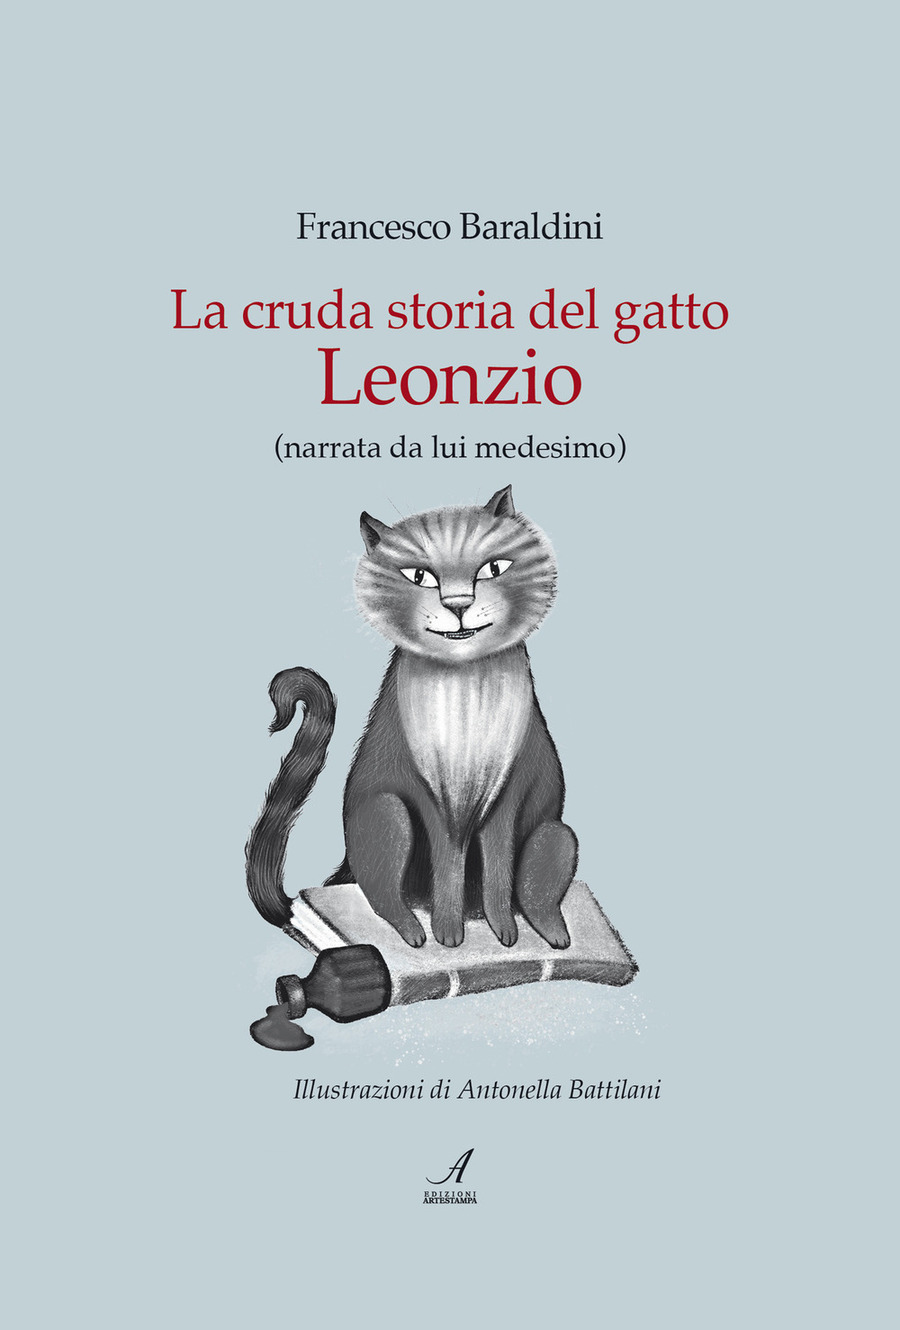 La cruda storia del gatto Leonzio (narrata da lui medesimo)